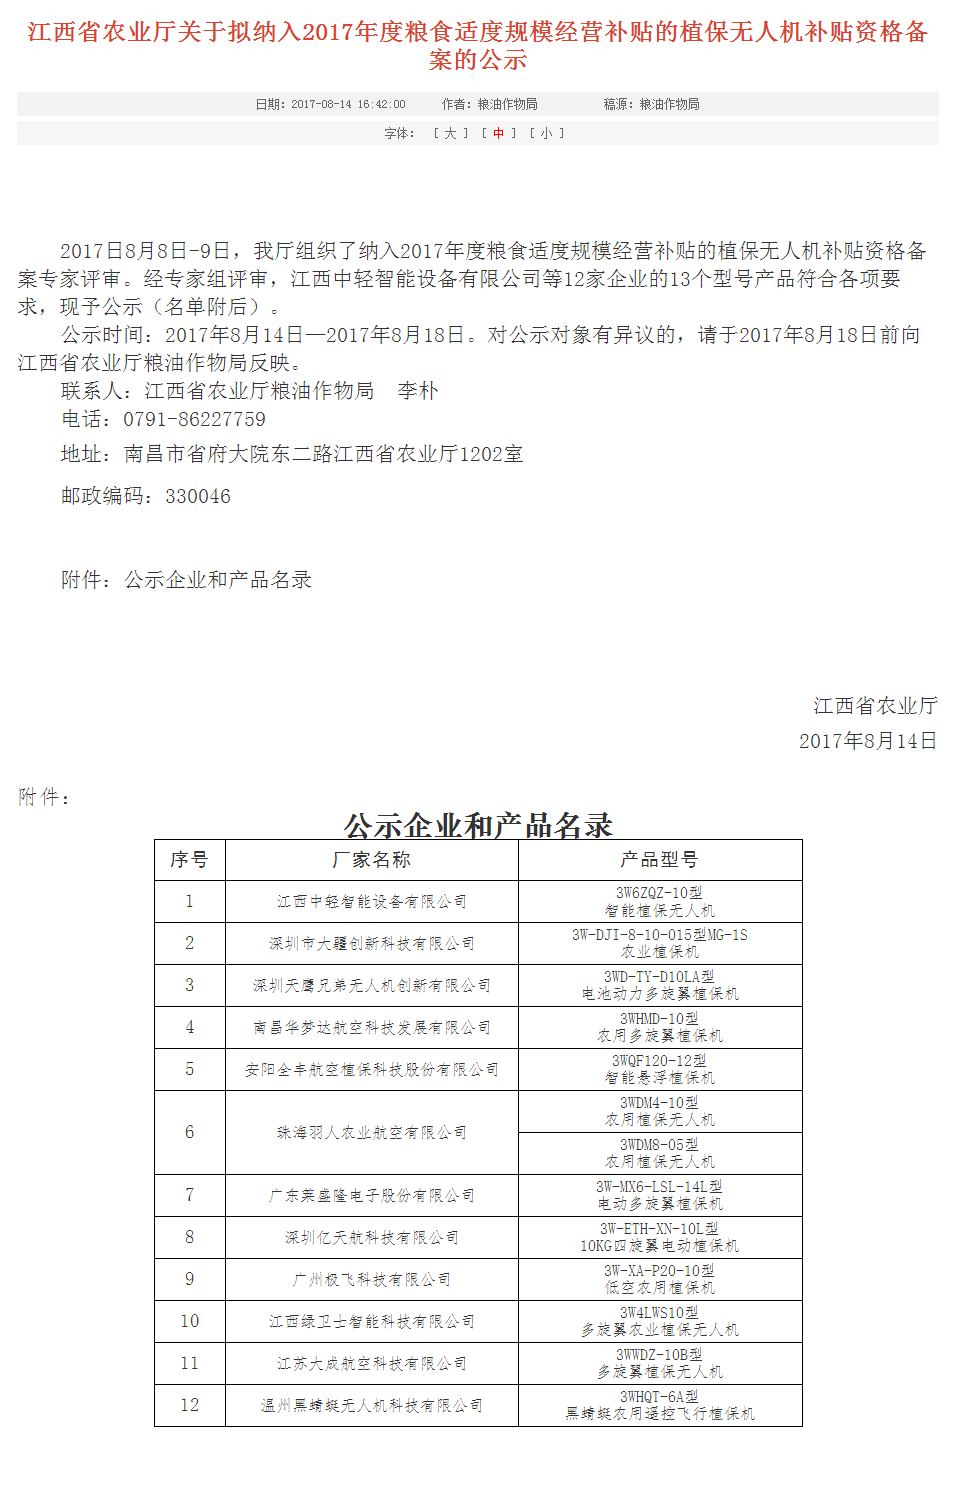 珠海羽人获得2017年江西省植保无人机补贴资格